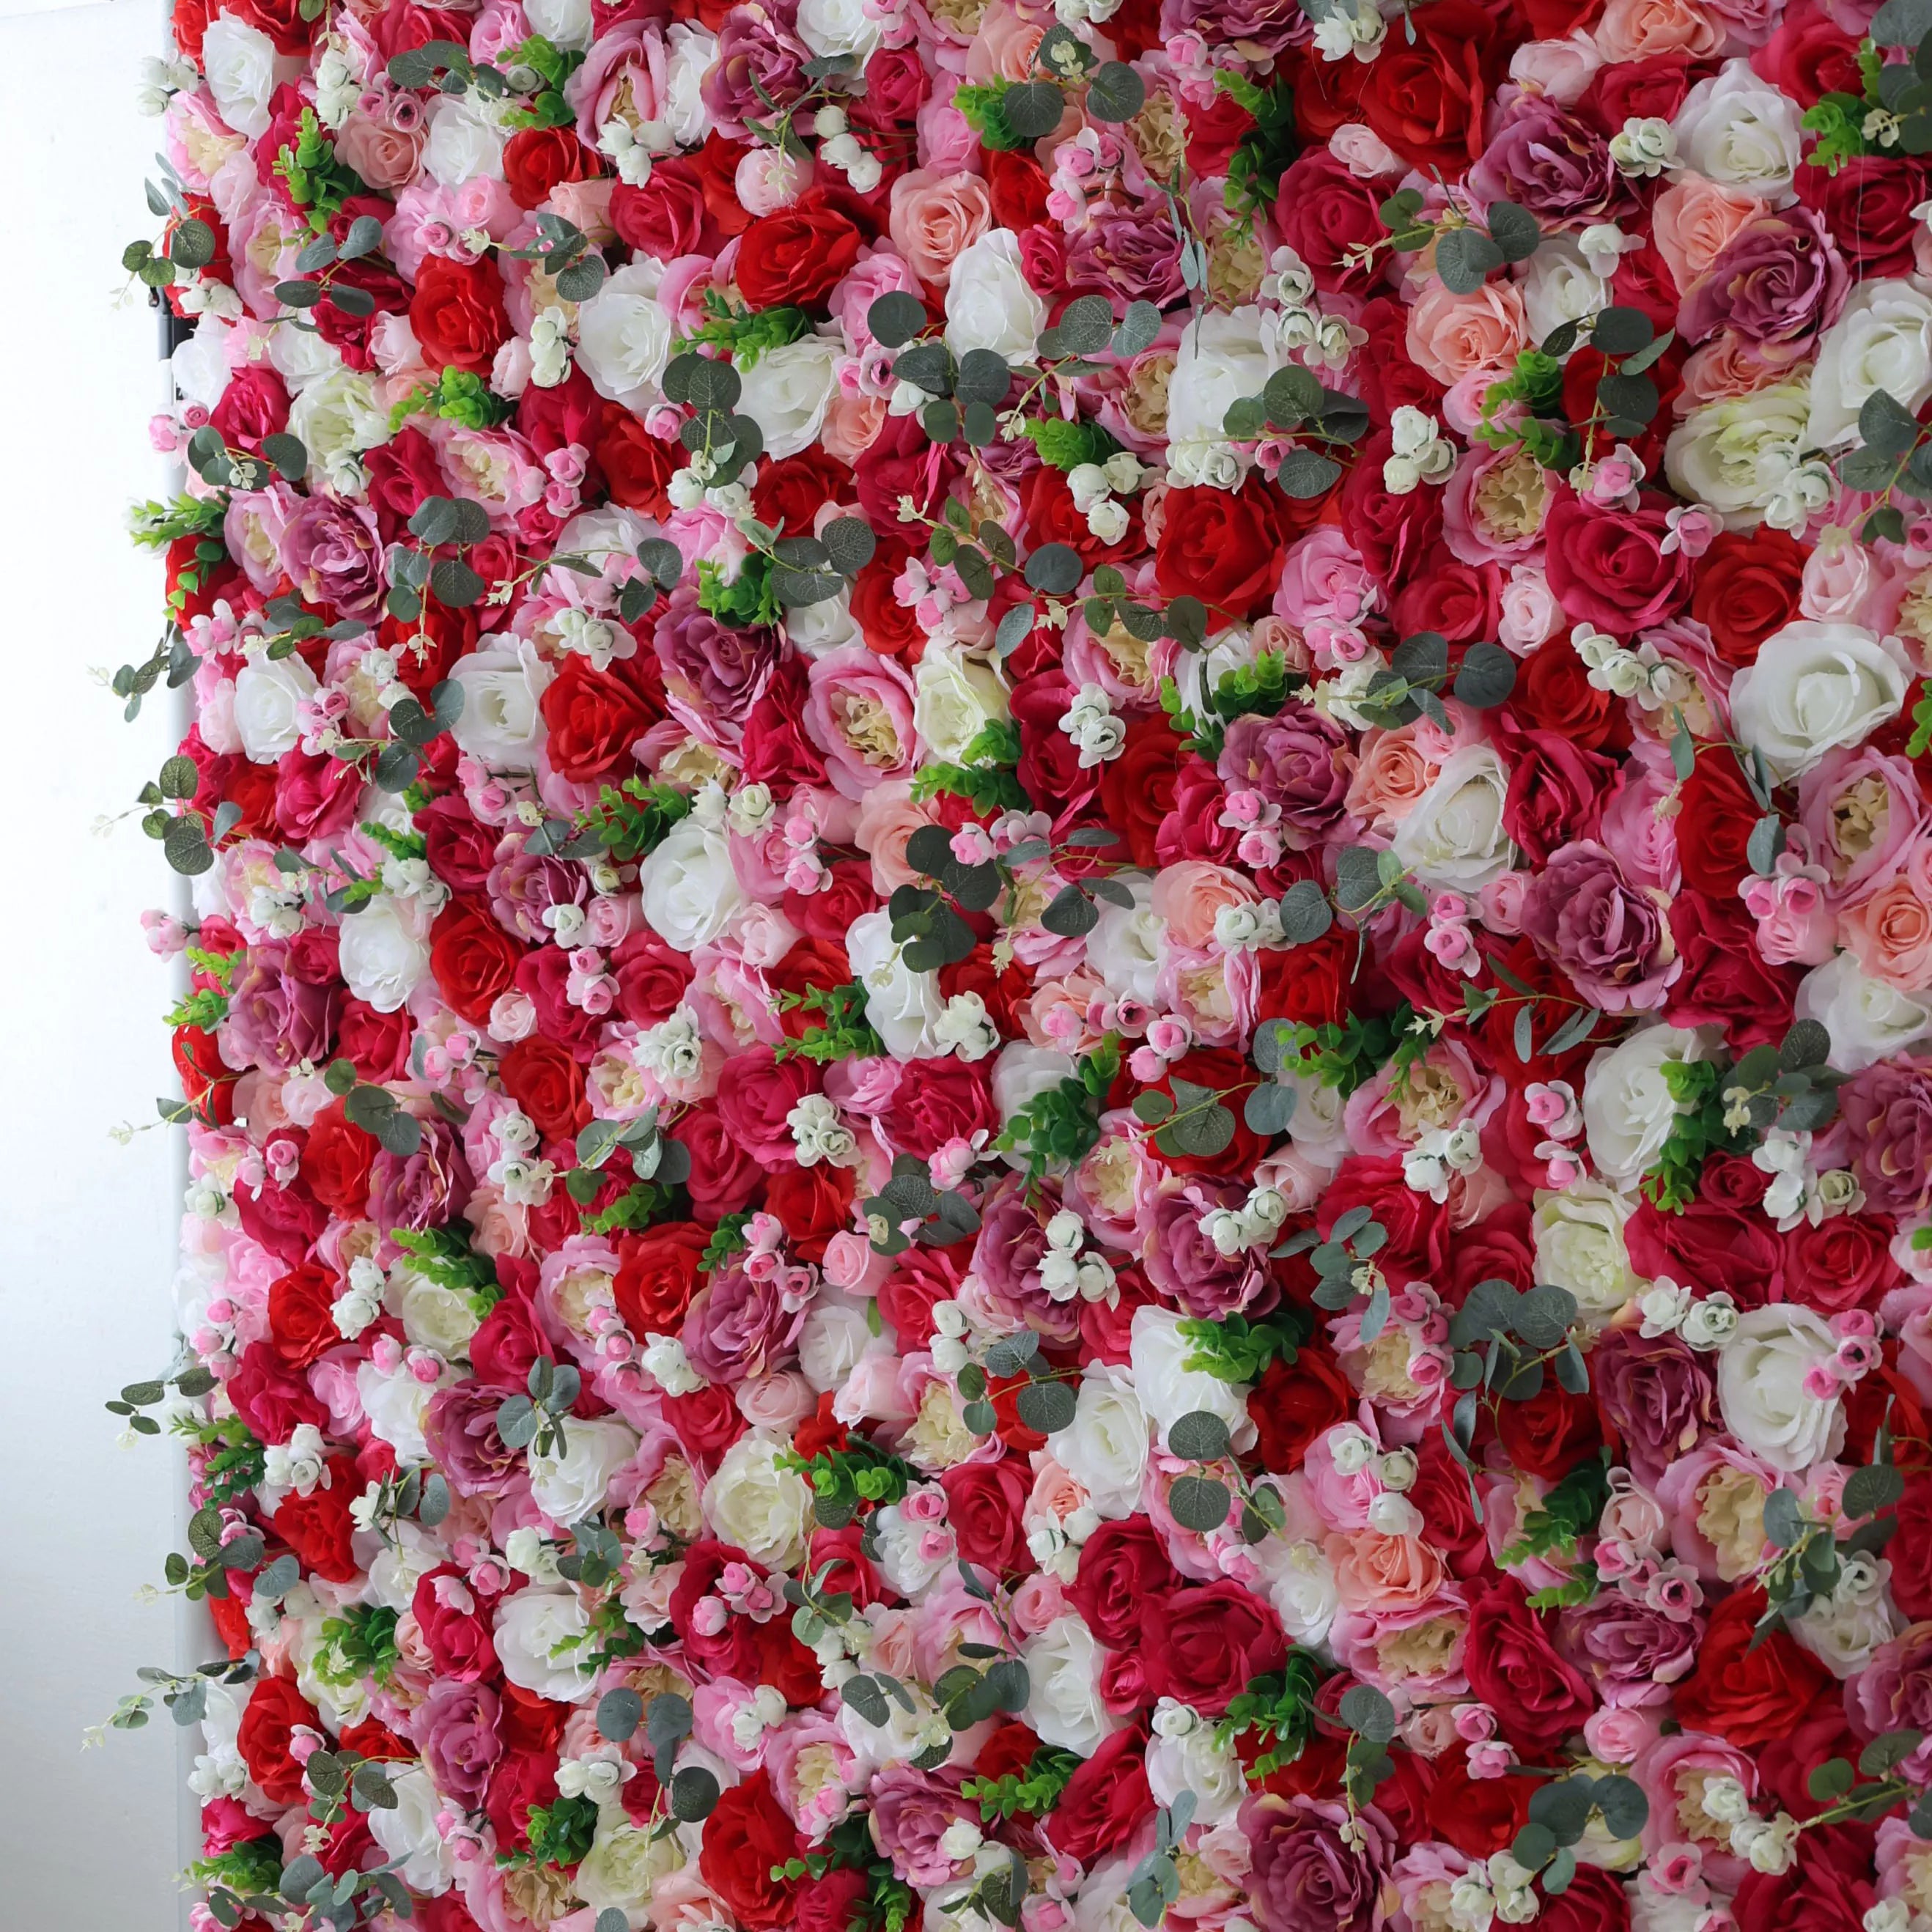 زهور الفالار لفافة قماش من خشب الورد الصناعي ورود حمراء وورود بيضاء مع خضار مموه جدارية للزفاف ، ديكور حفلات زهور ، خلفية للحفلات ، مناسبة